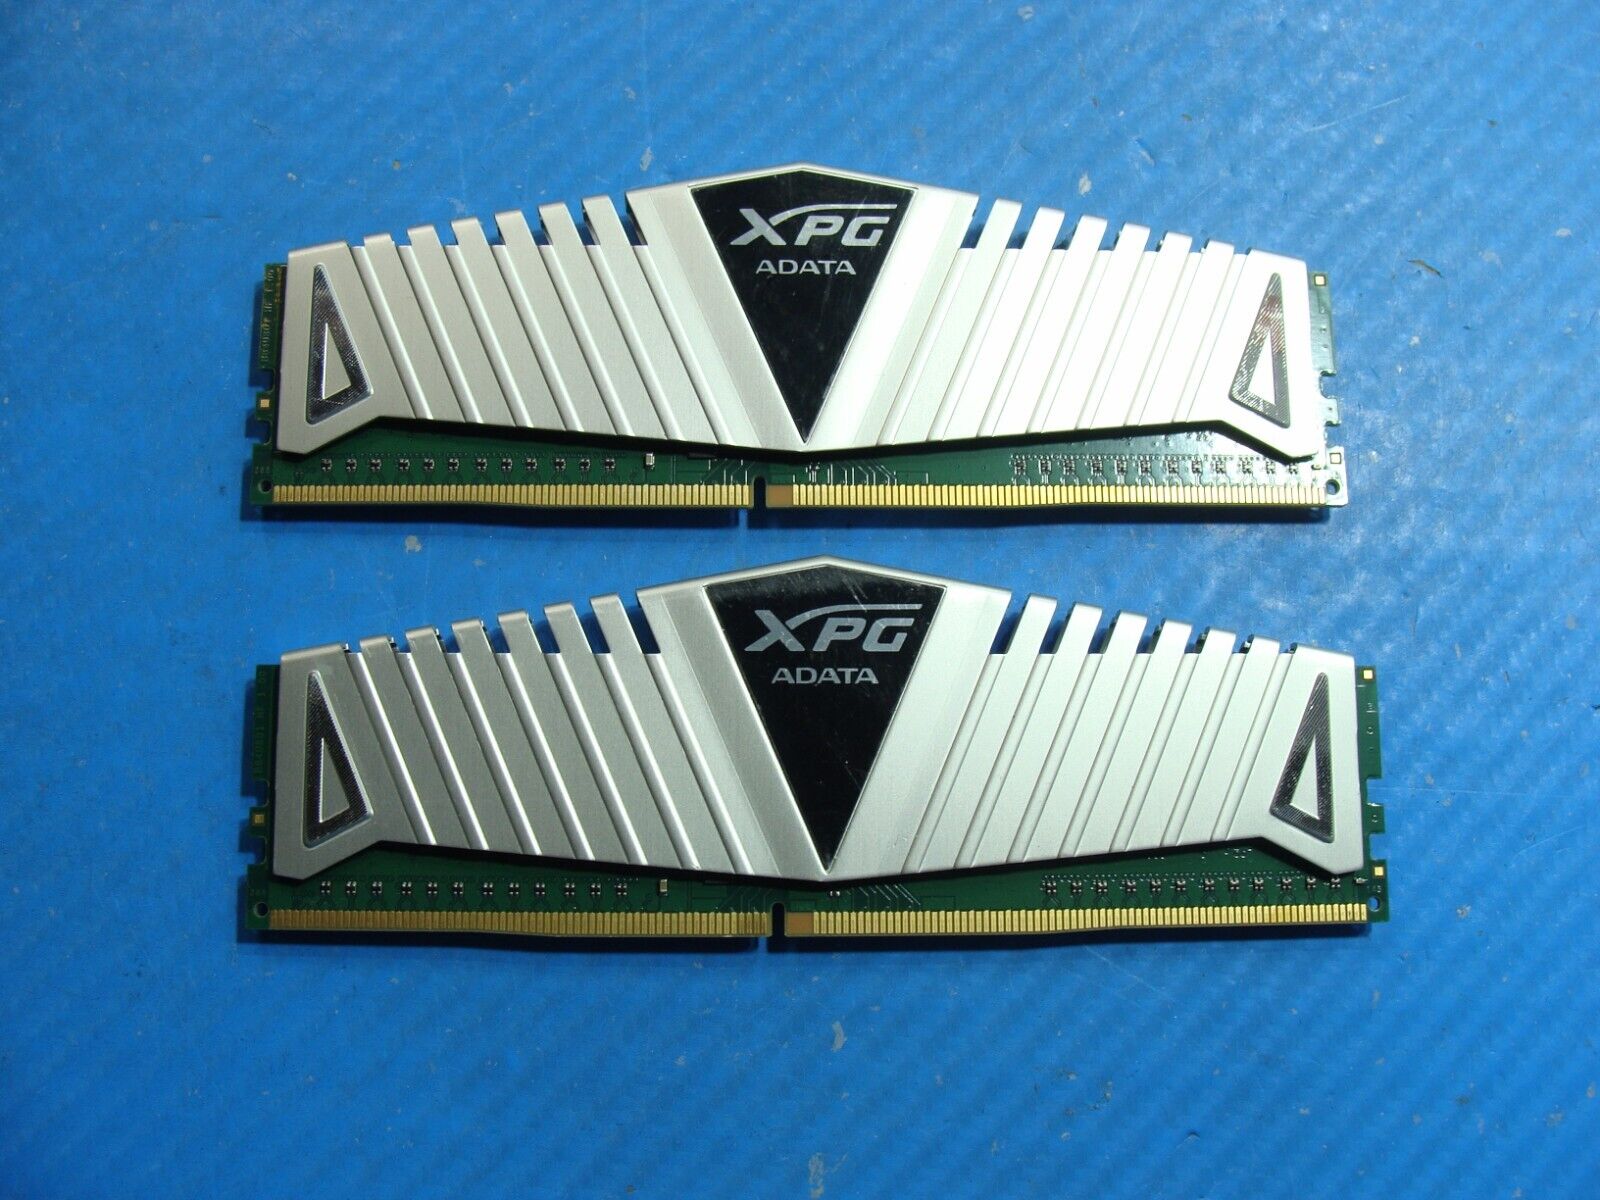 iBuyPower I-Series 504 ADATA XPG 16GB 2x8GB DDR4 Memory RAM AX4U240038G16-BSZ